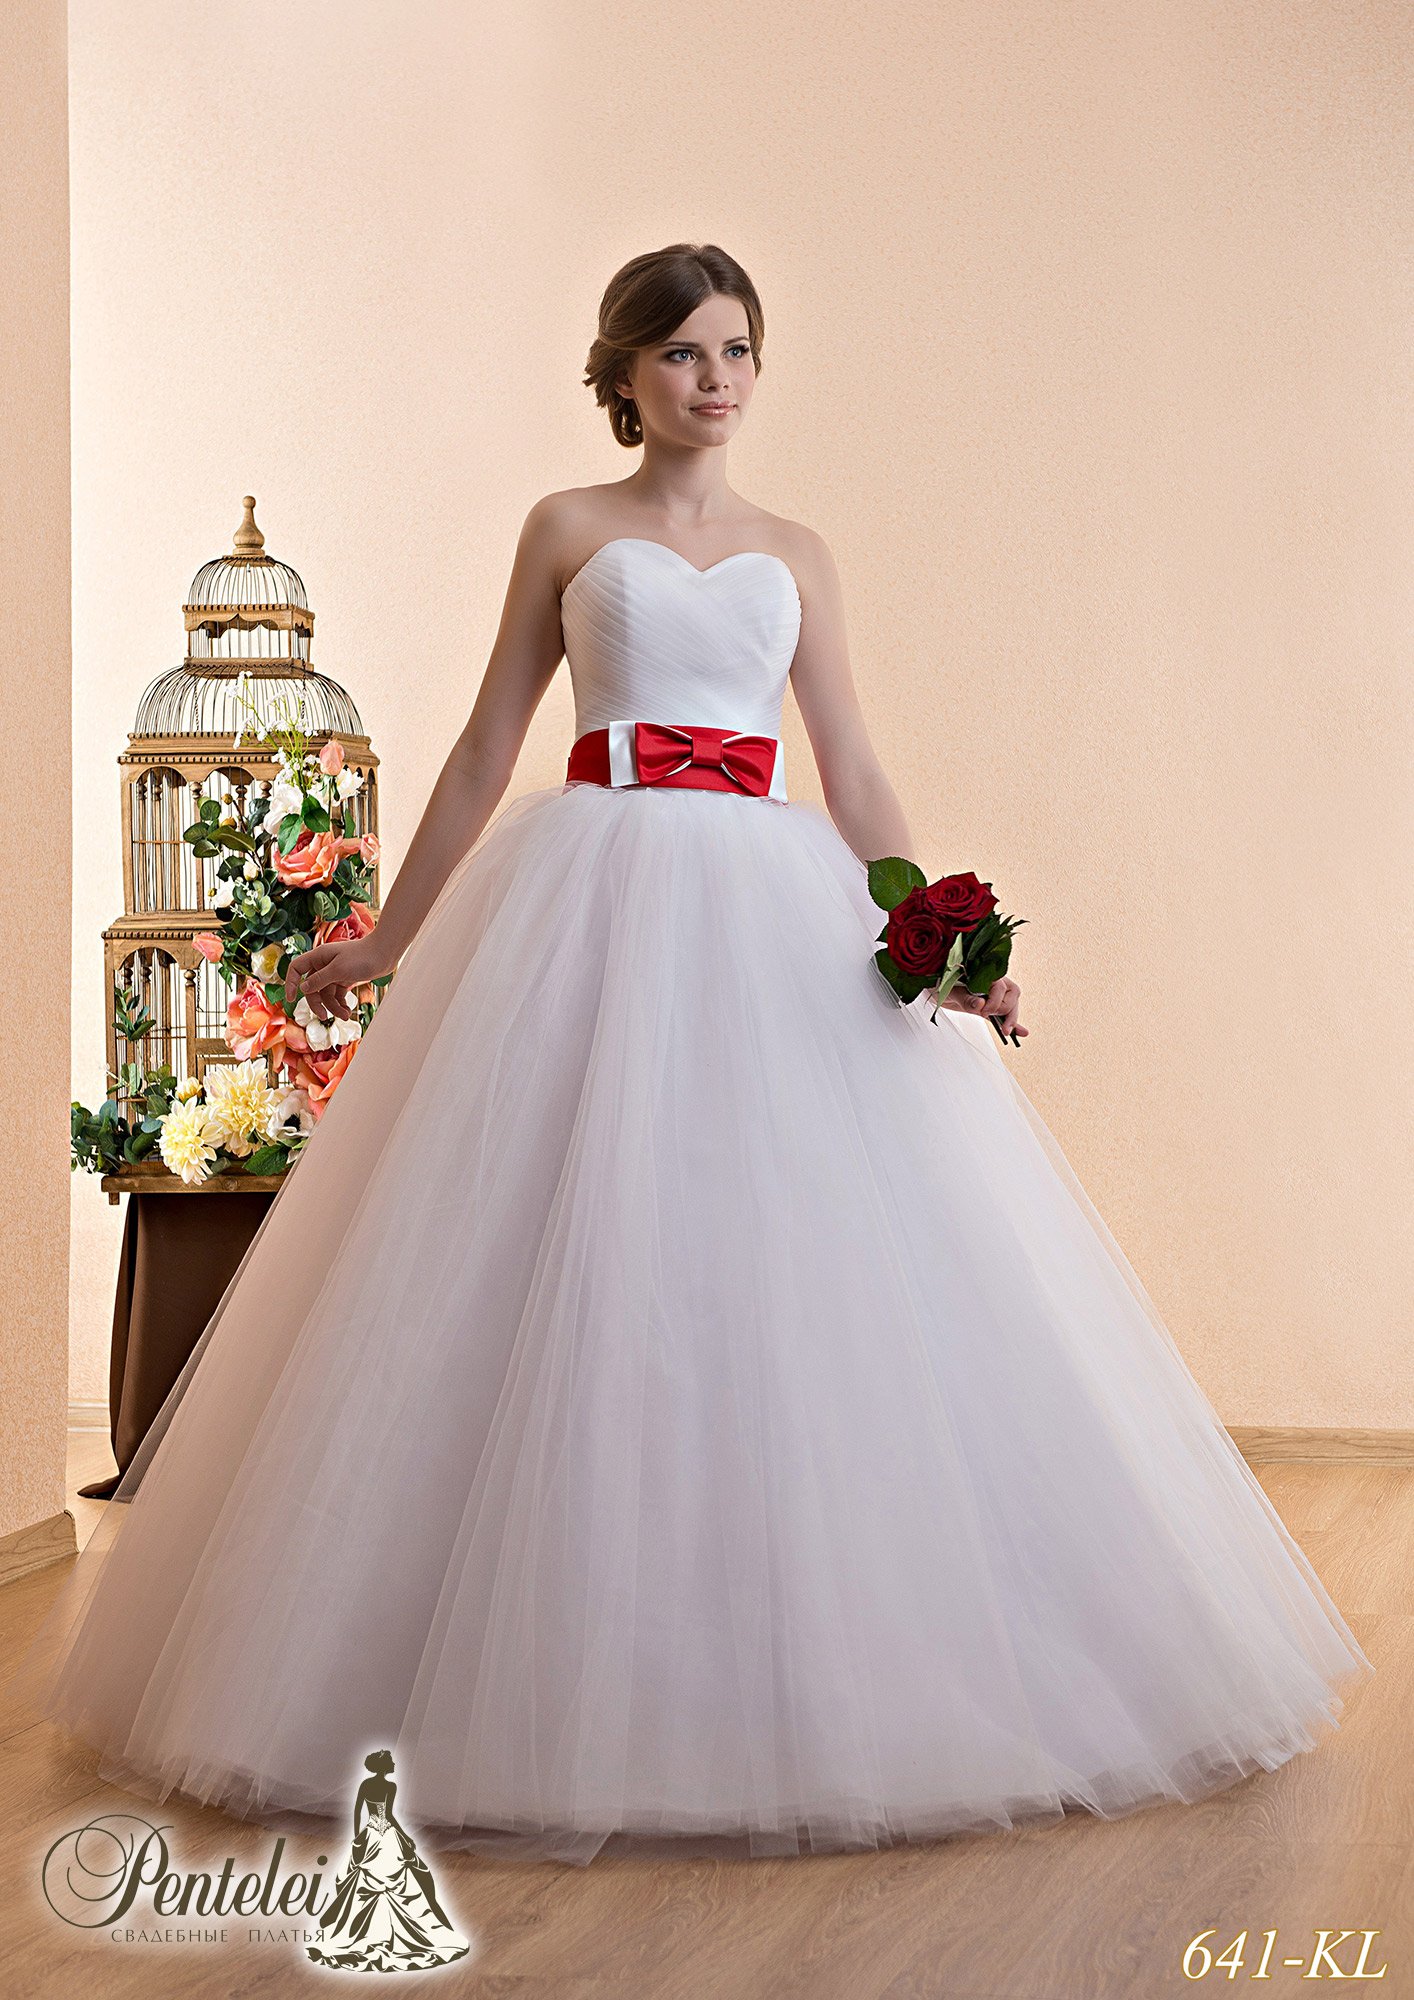 Недорогие свадебные платья каталог. Красное свадебное платье. Свадебное платье с красным поясом. Недорогие Свадебные платья. Свадебное платье белое с красным.